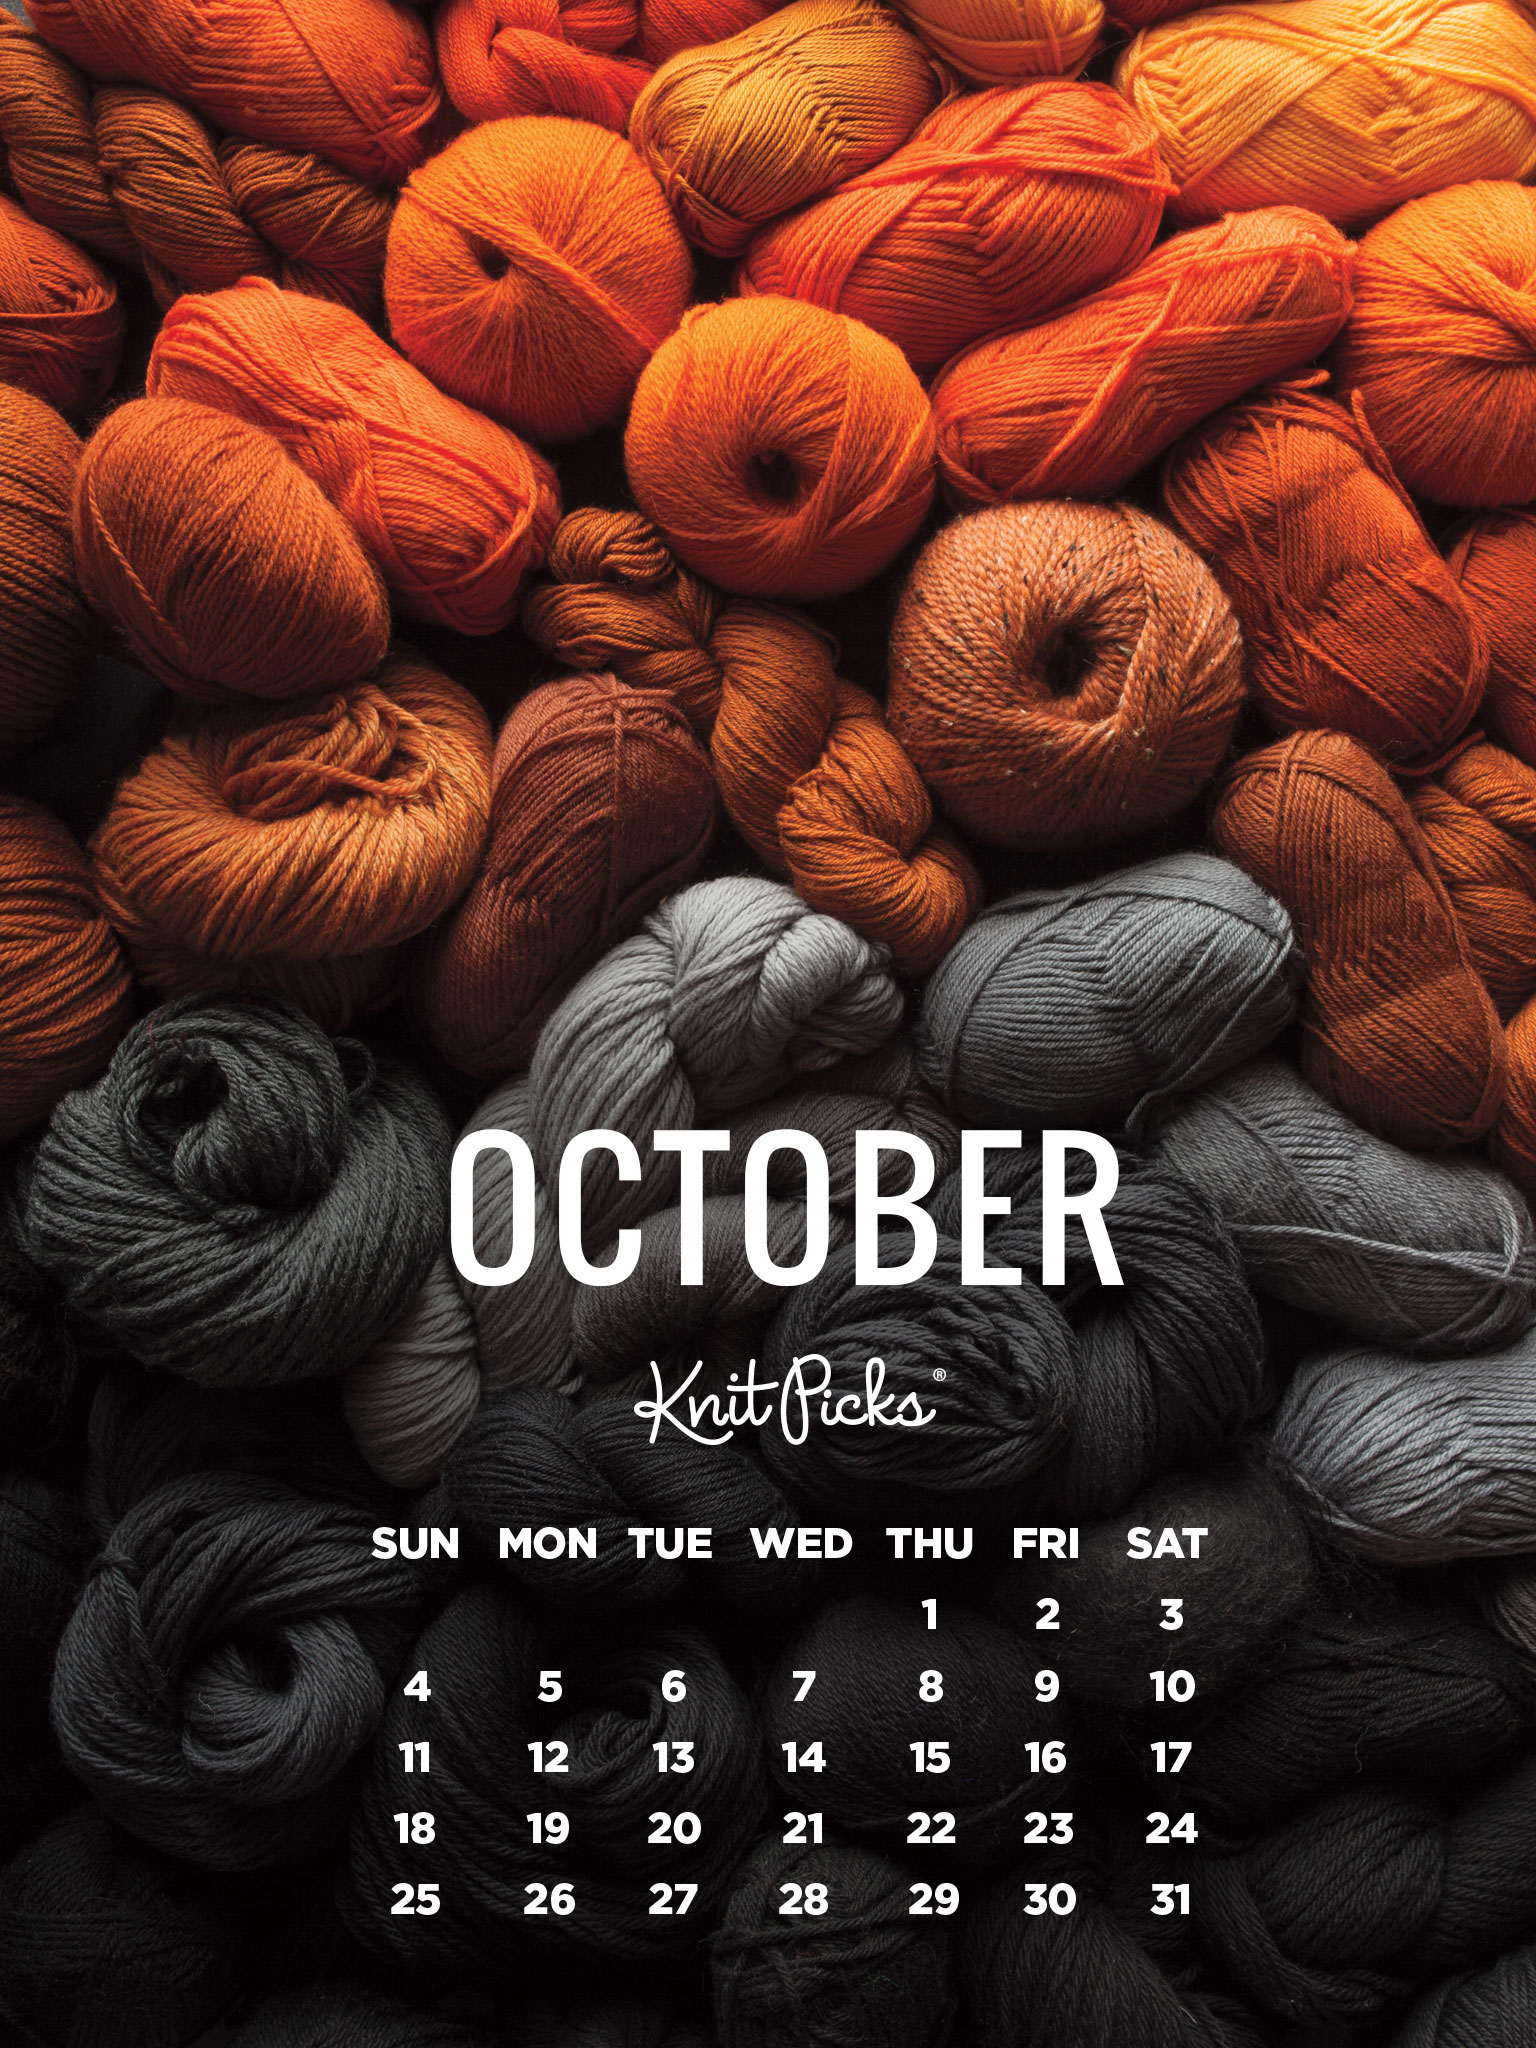 October 2015 Wallpaper Calendar - KnitPicks Staff Knitting Blog